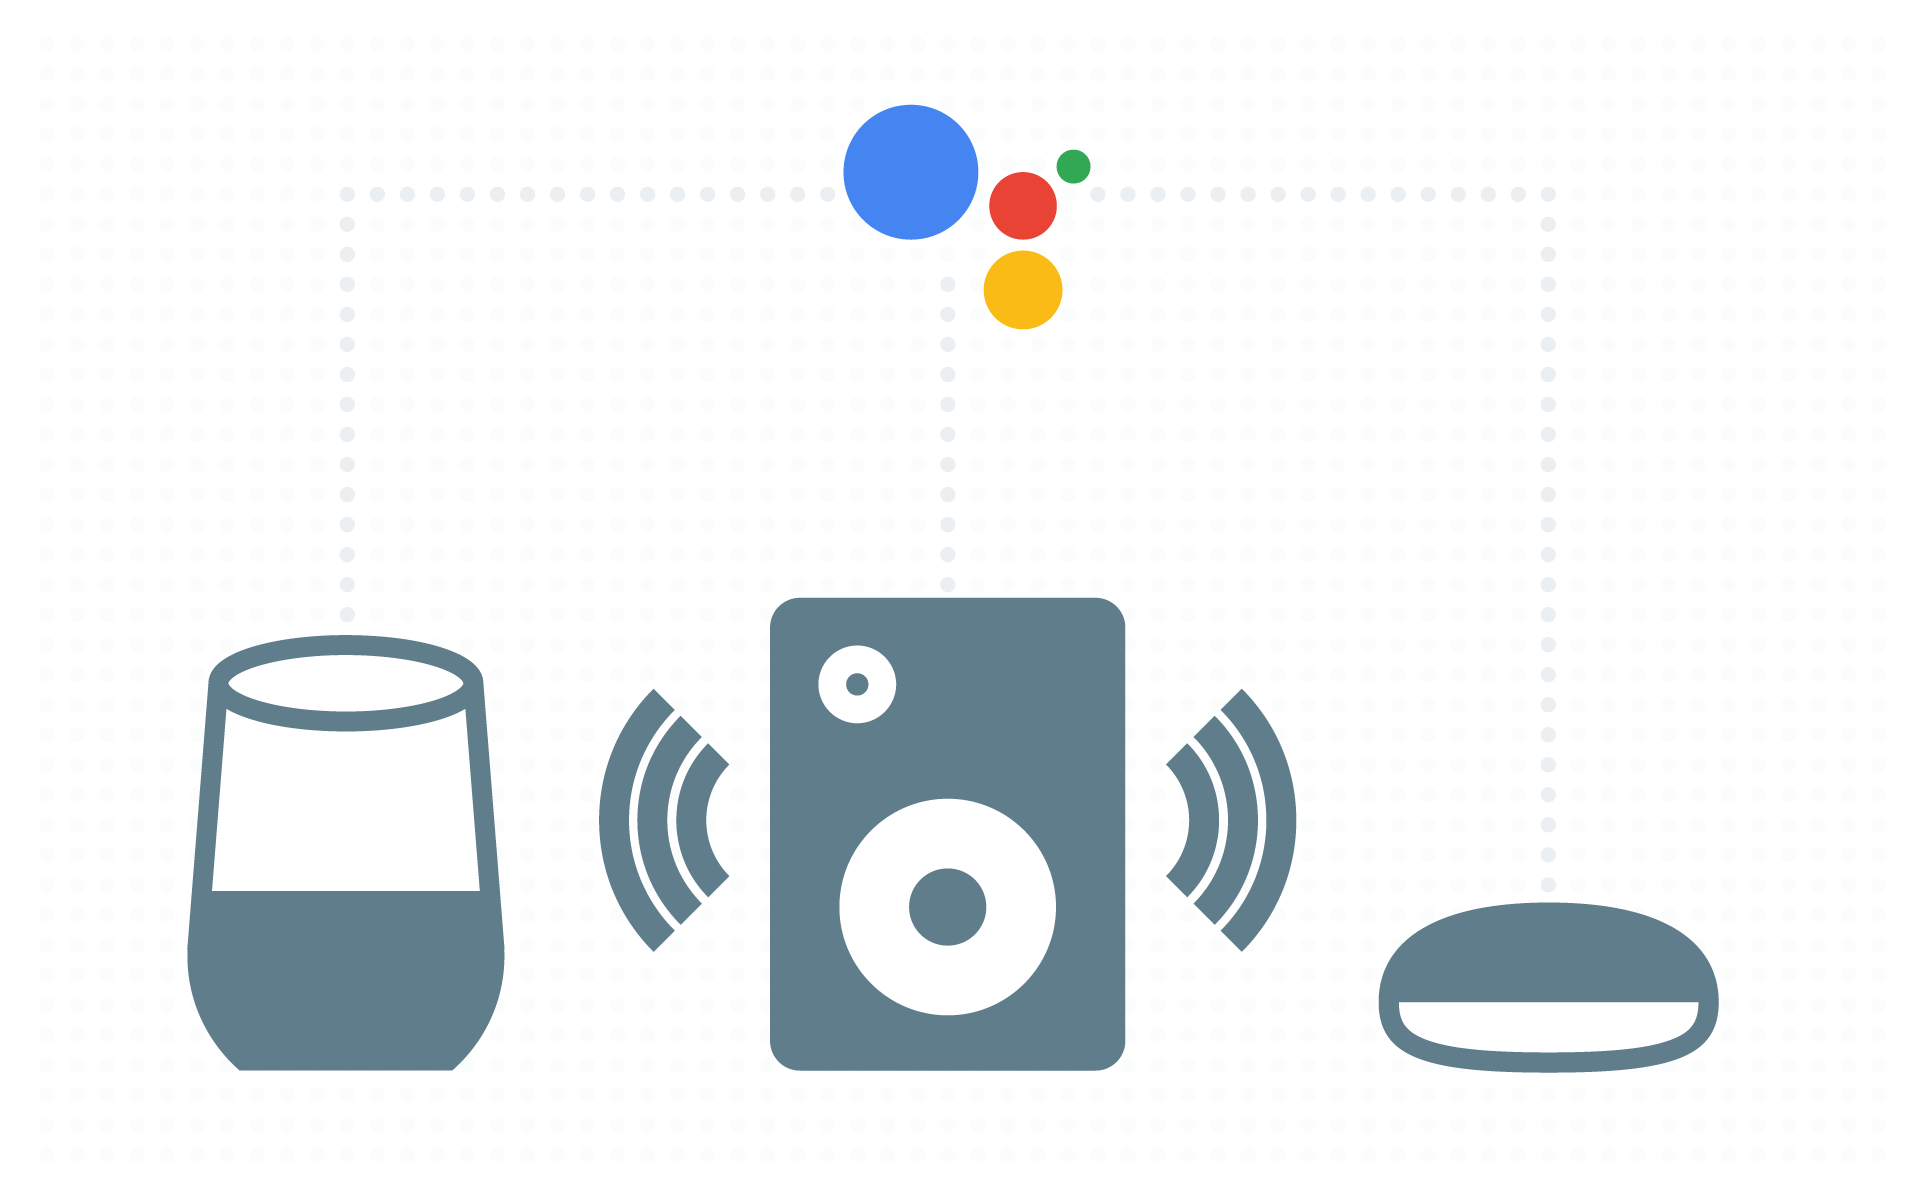 Smart speakers, Google Assistant